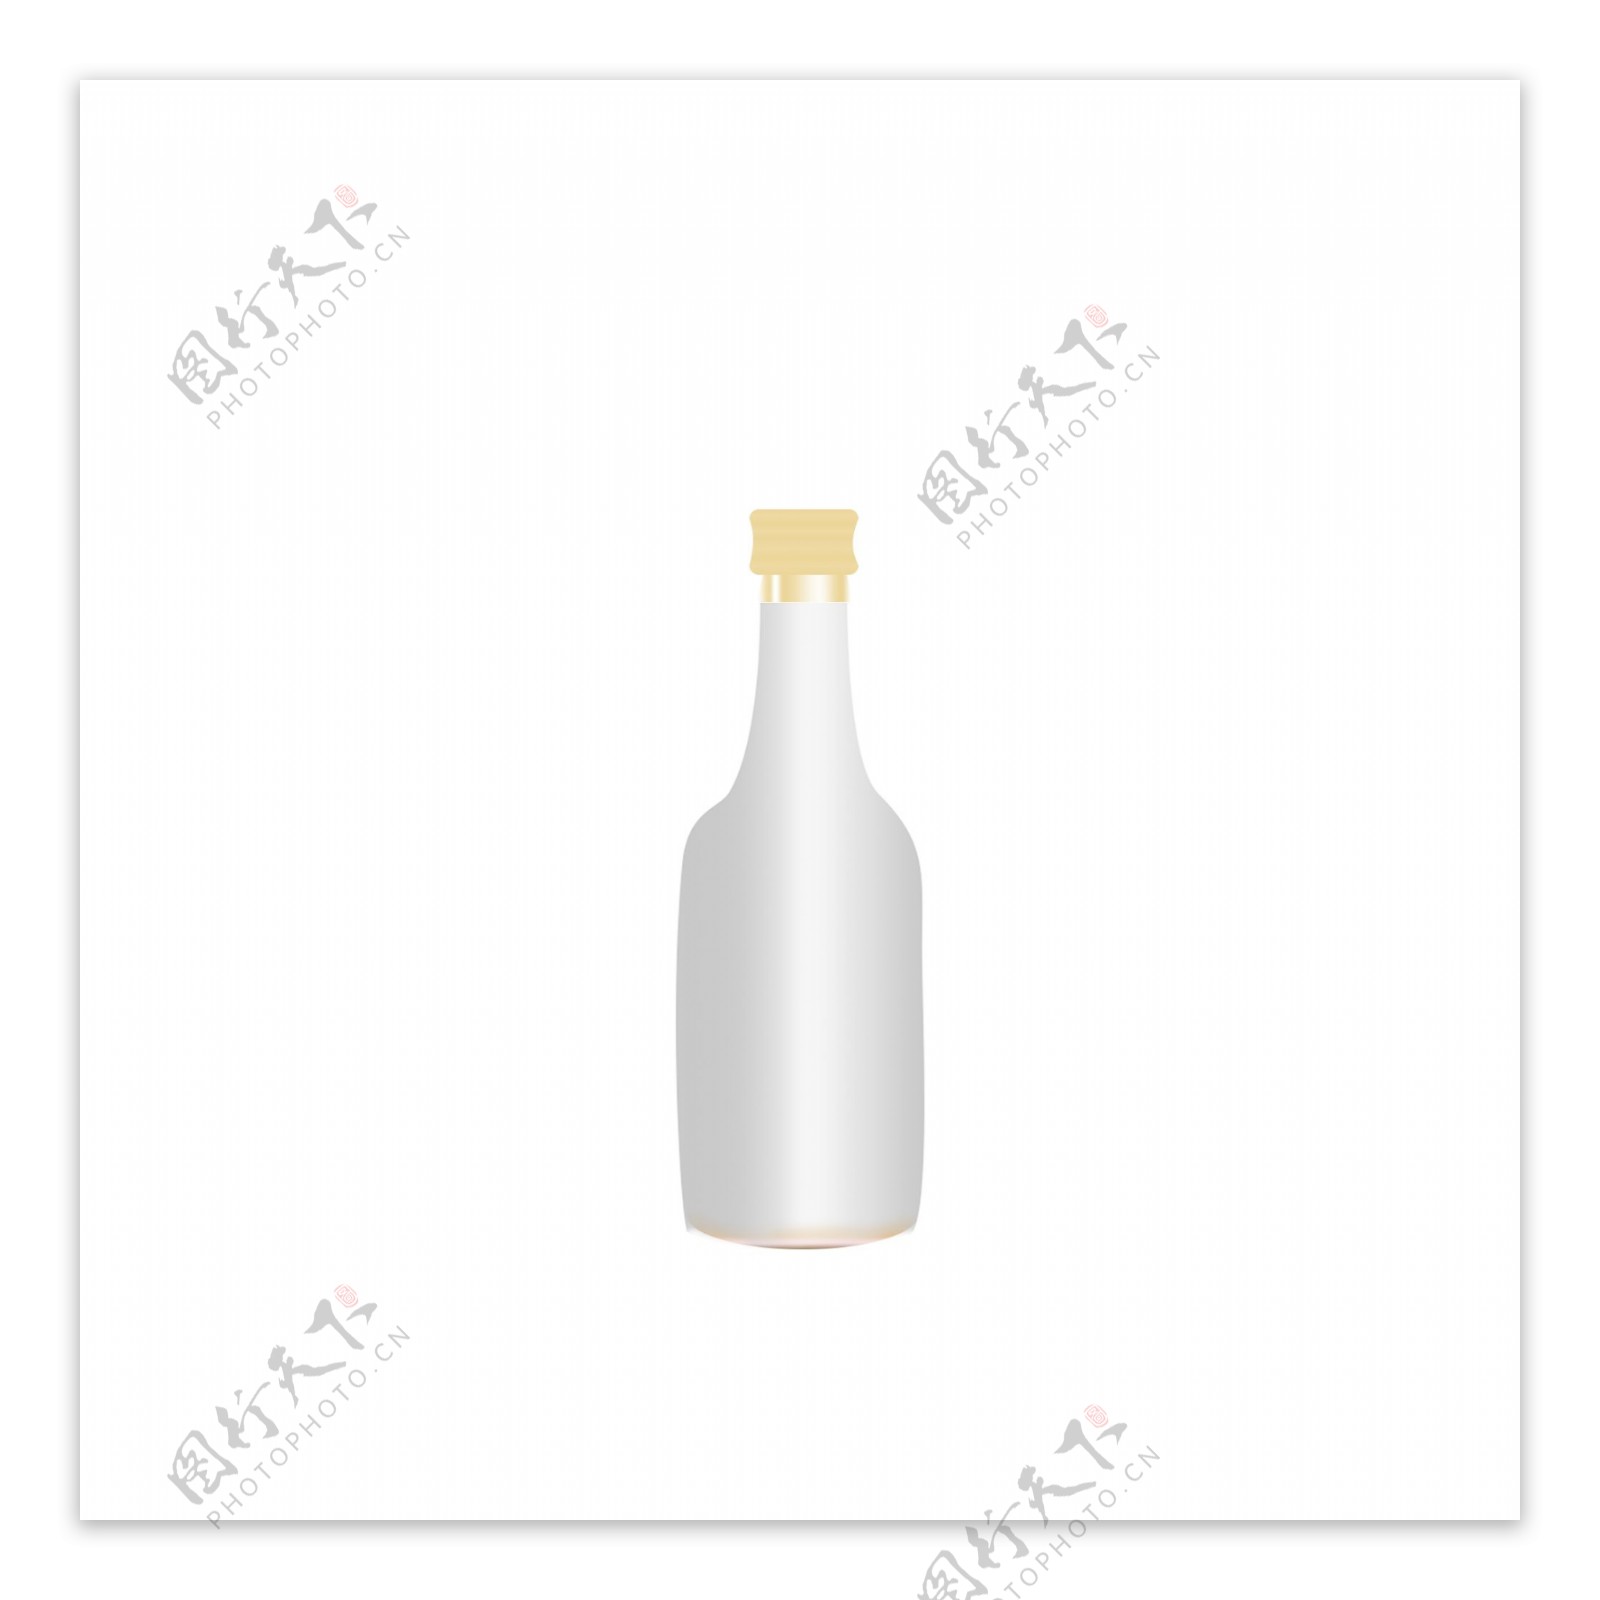 立体瓶子可商用手绘元素